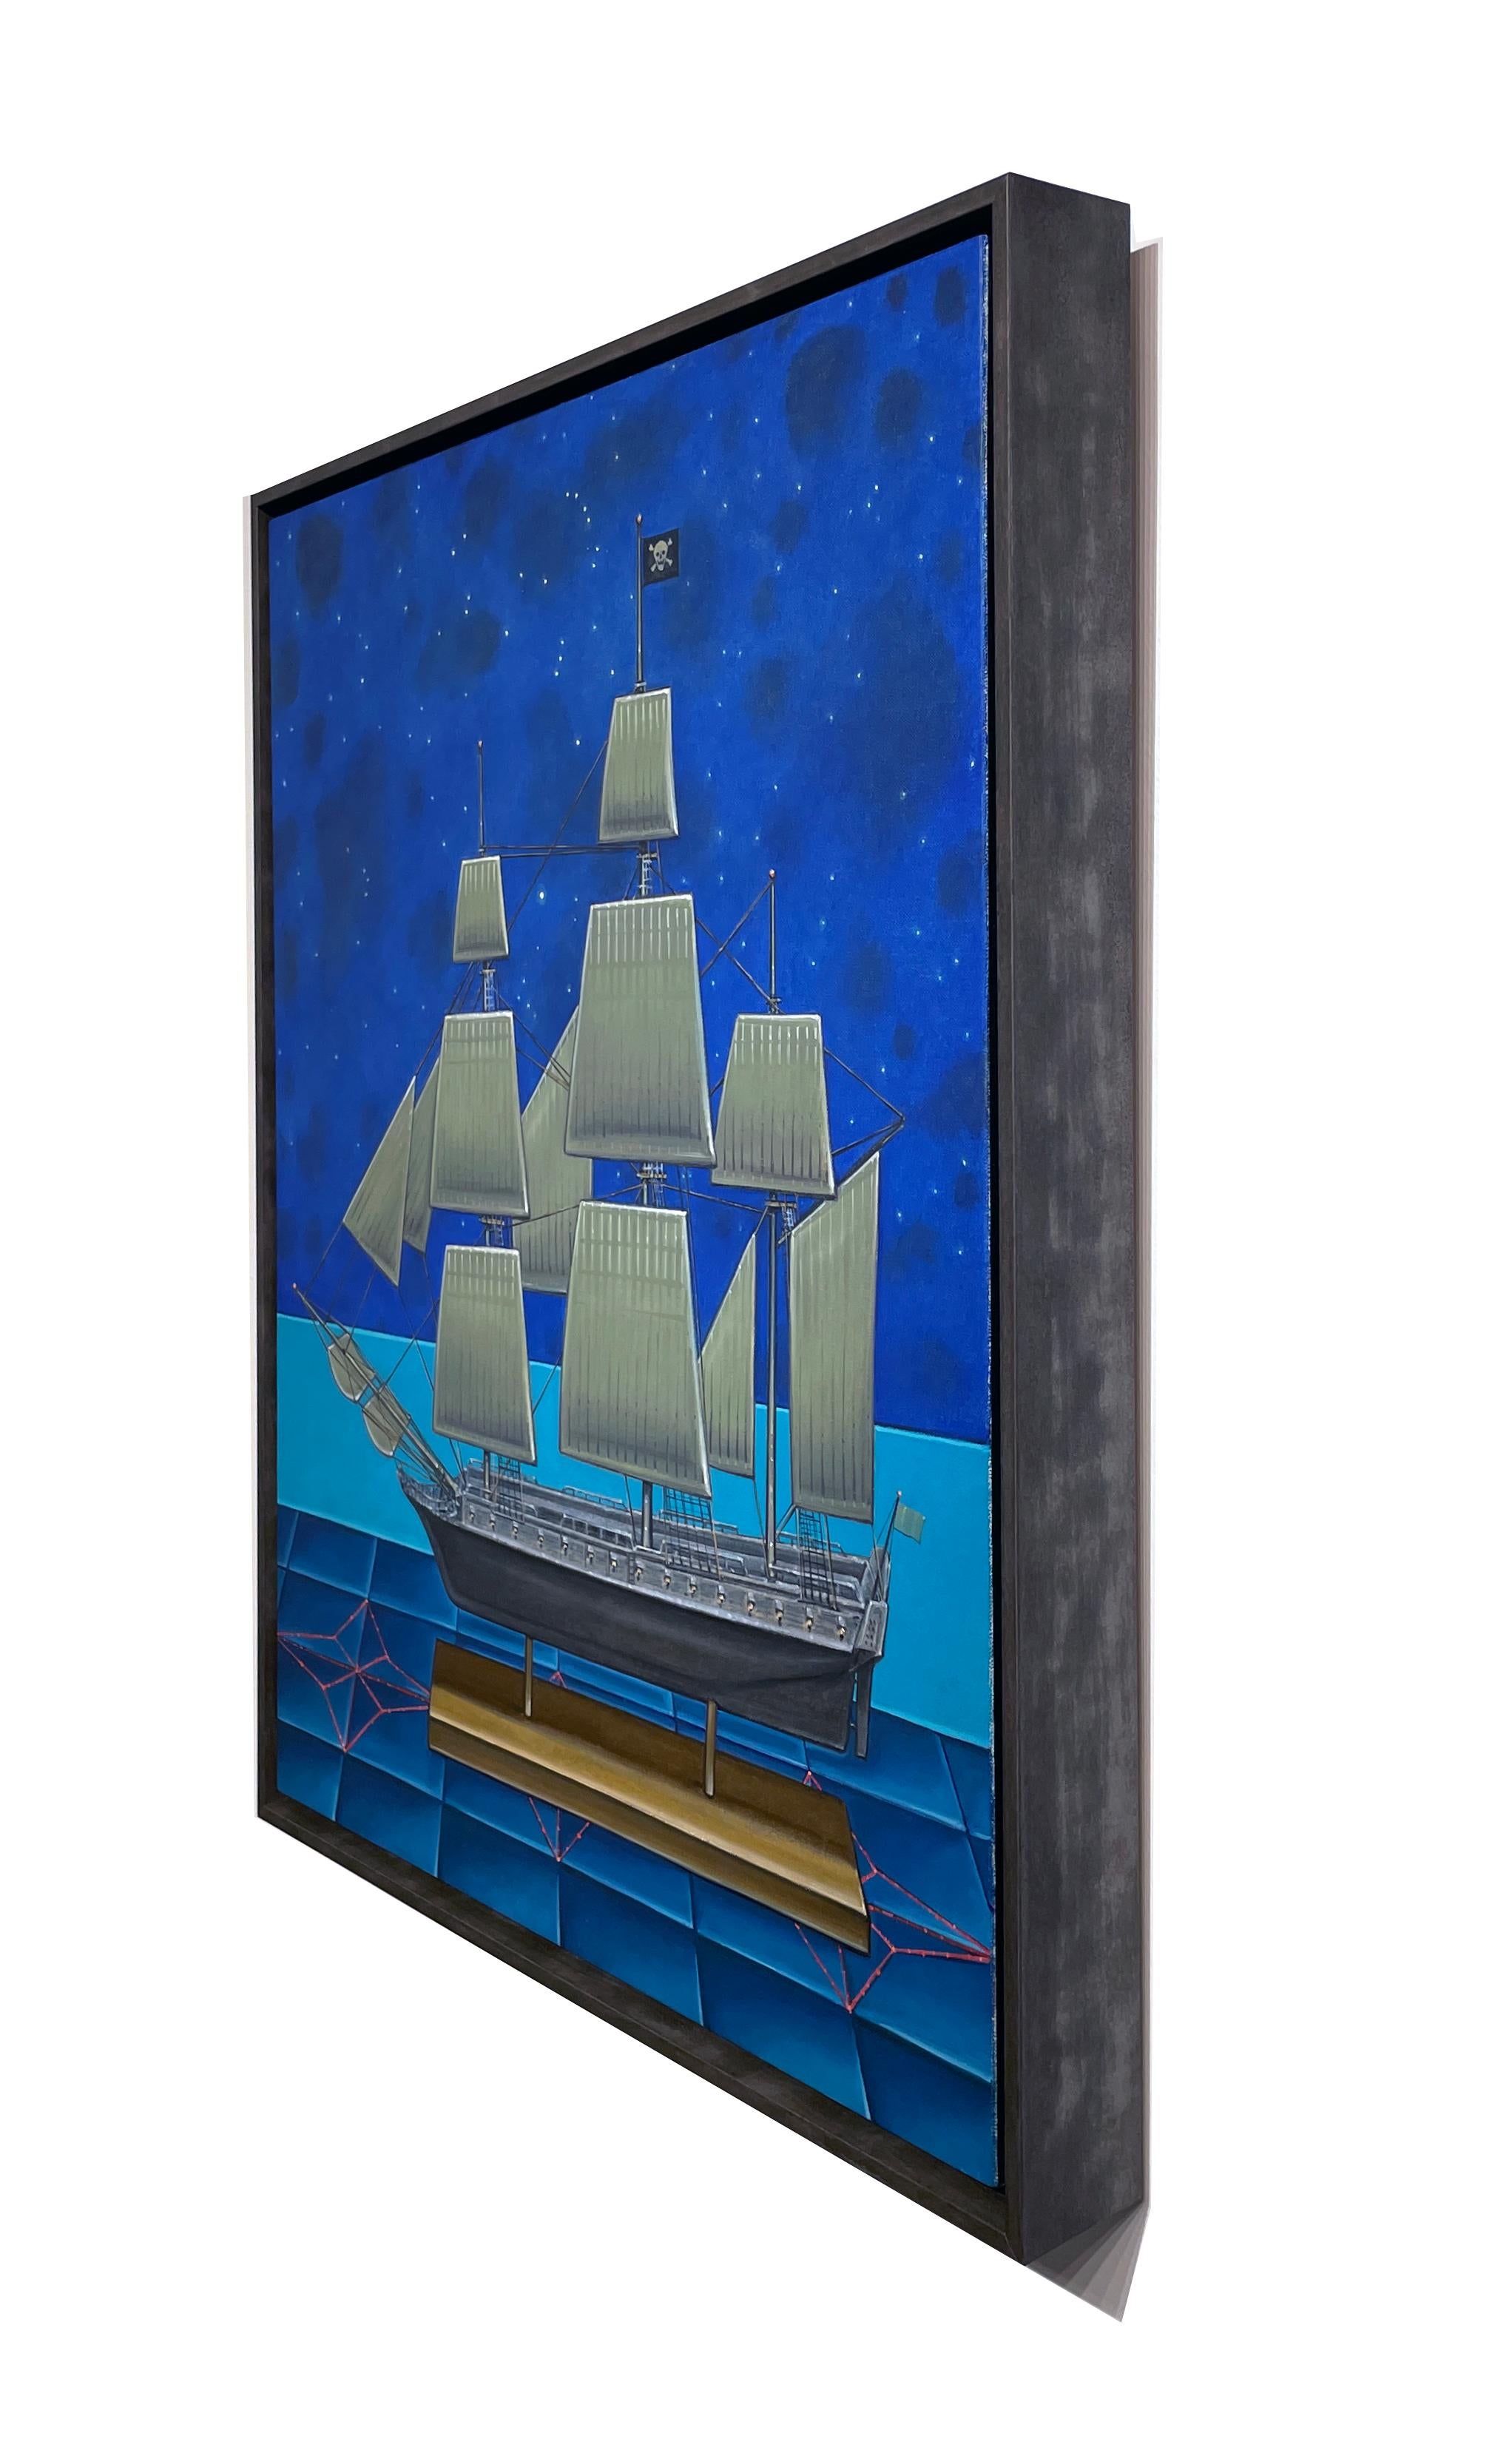 Nächtliche Überfahrt -  Modell eines Piratenschiffes und Konstellationen, Öl auf Tafel (Blau), Landscape Painting, von John Hrehov